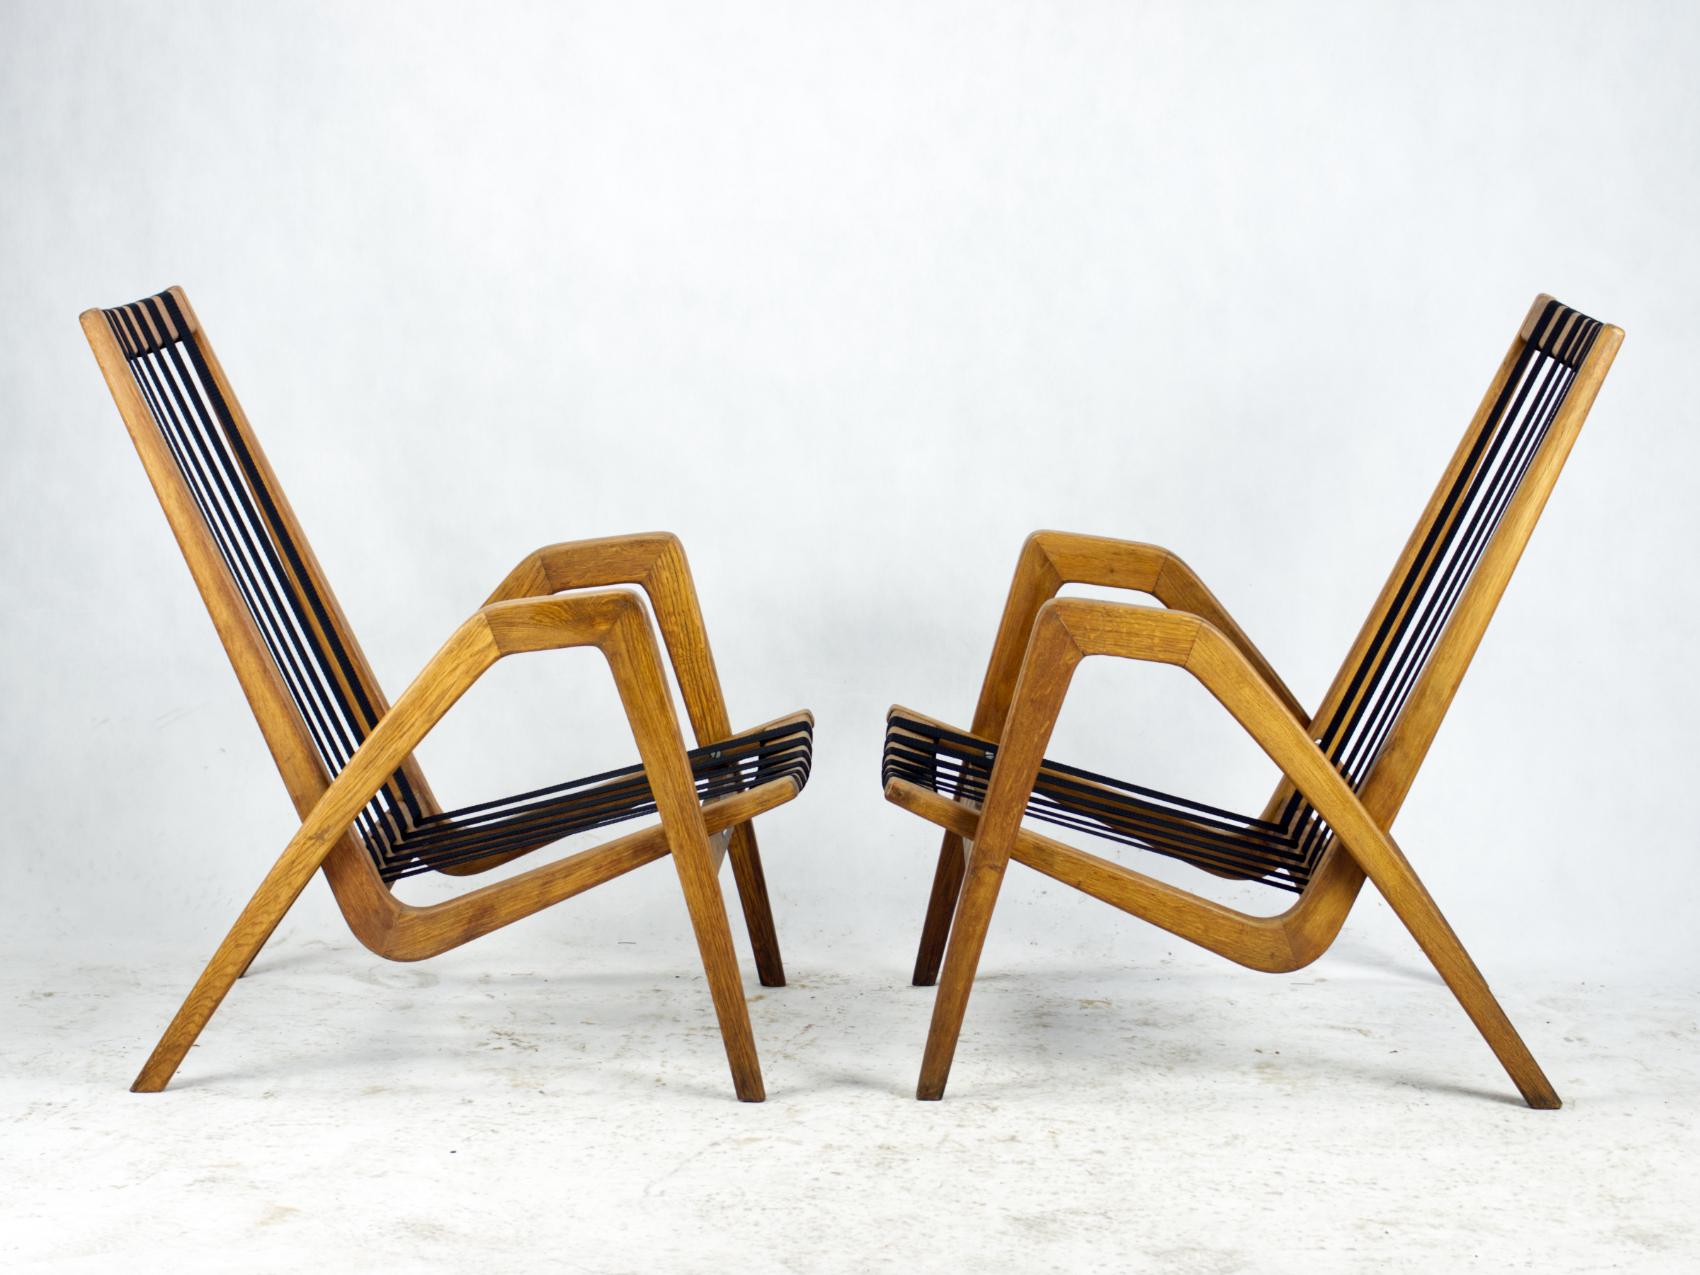 Die Sessel wurden in den 1950er Jahren von dem tschechischen Architekten Ján Vanek für das ULUV (Hauptverwaltung für Volkskunst) in der Tschechoslowakei entworfen. Die Sessel gehörten zum Inventar des tschechoslowakischen Staatsfilms